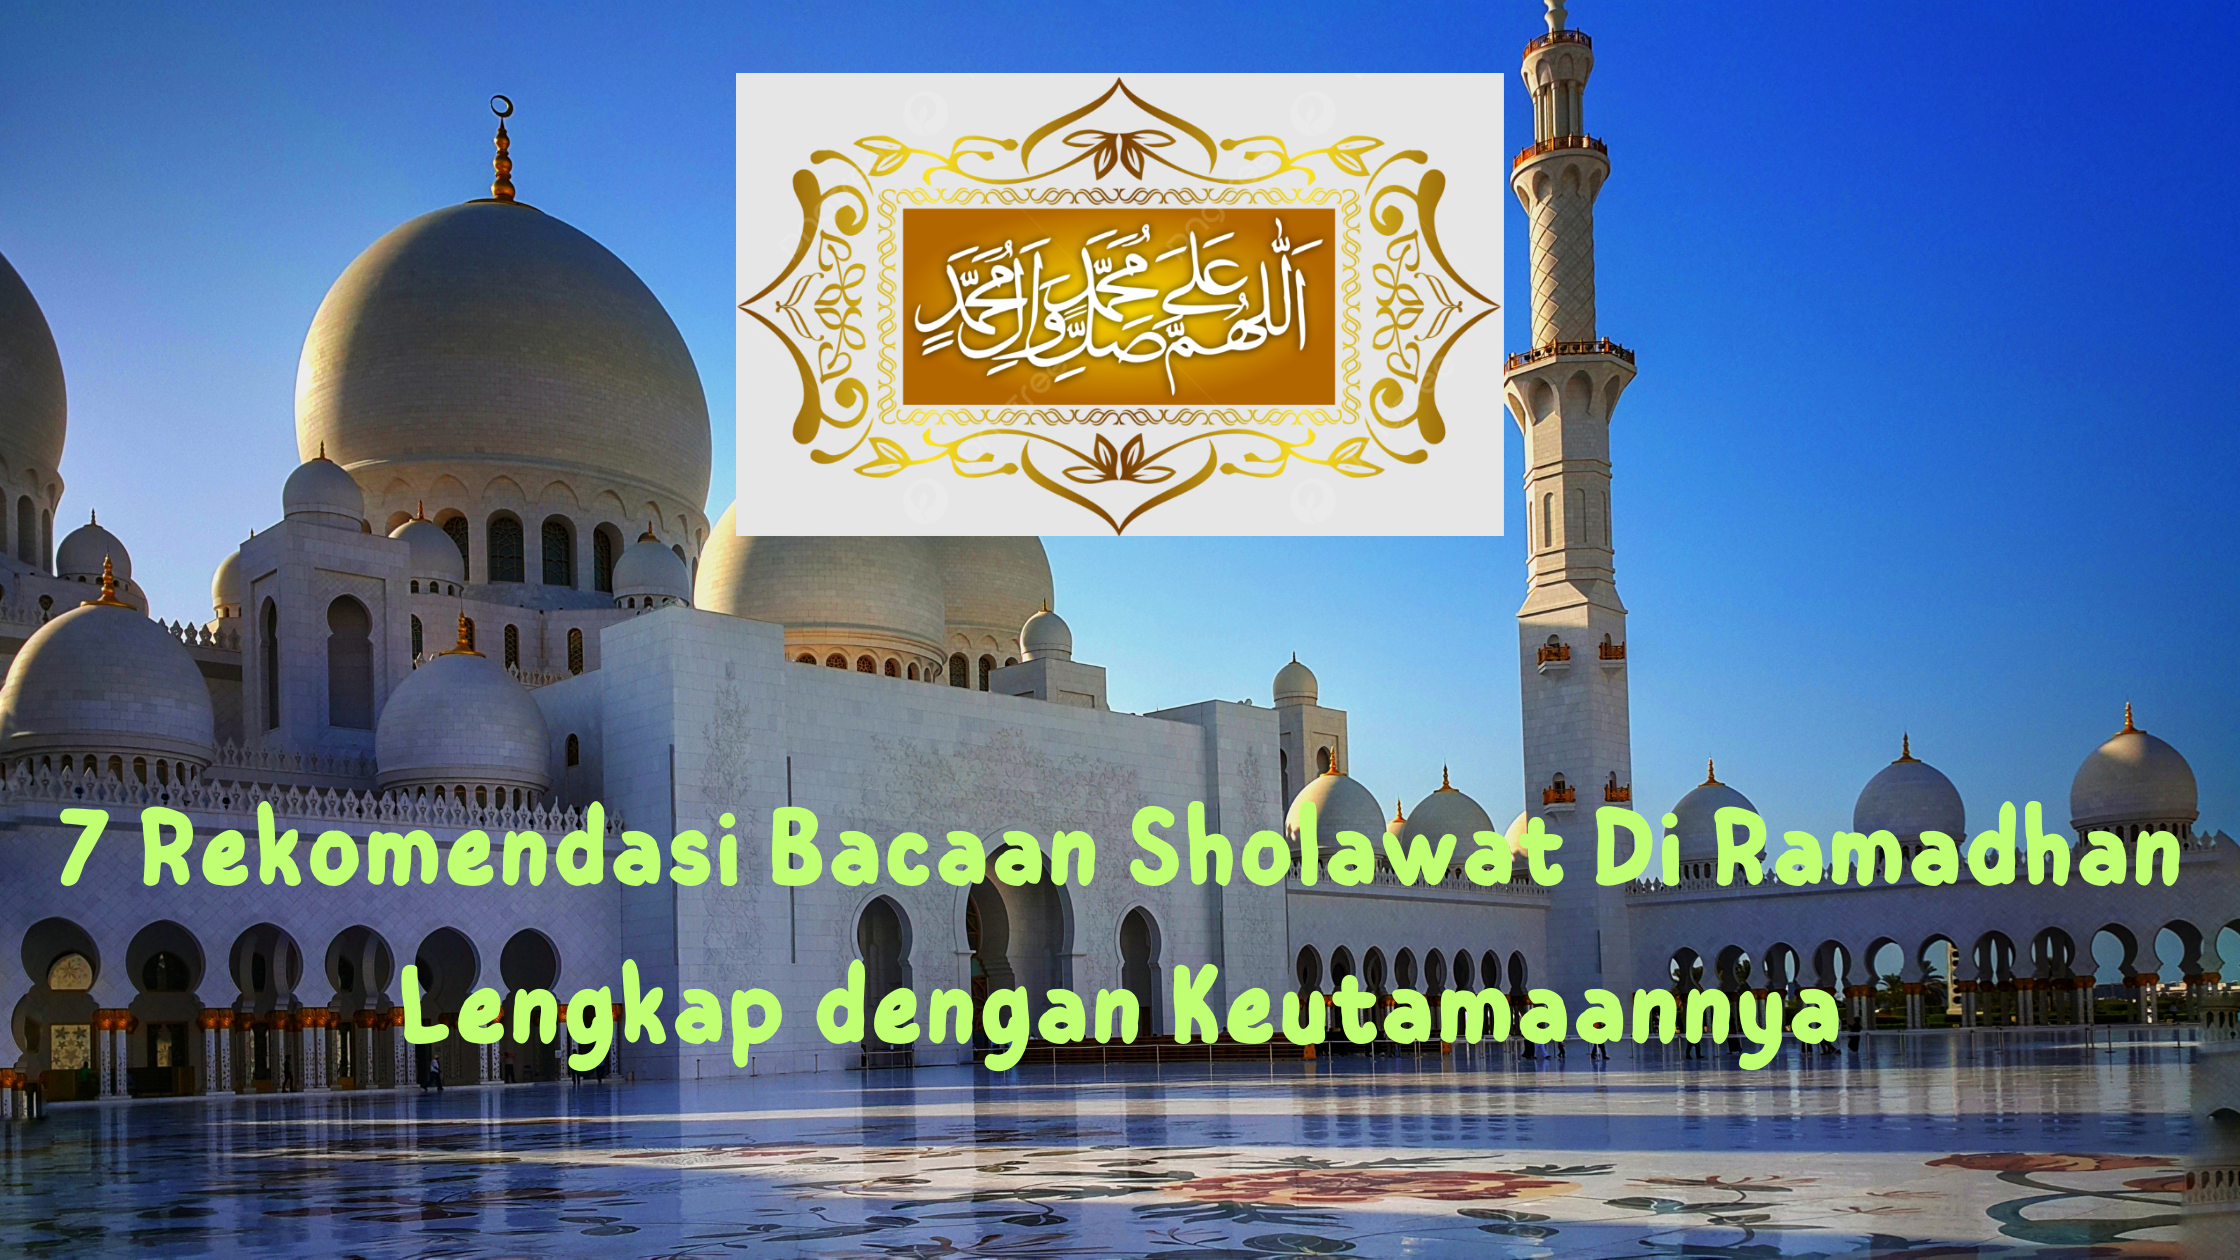 7 Rekomendasi Bacaan Sholawat Di Bulan Ramadhan